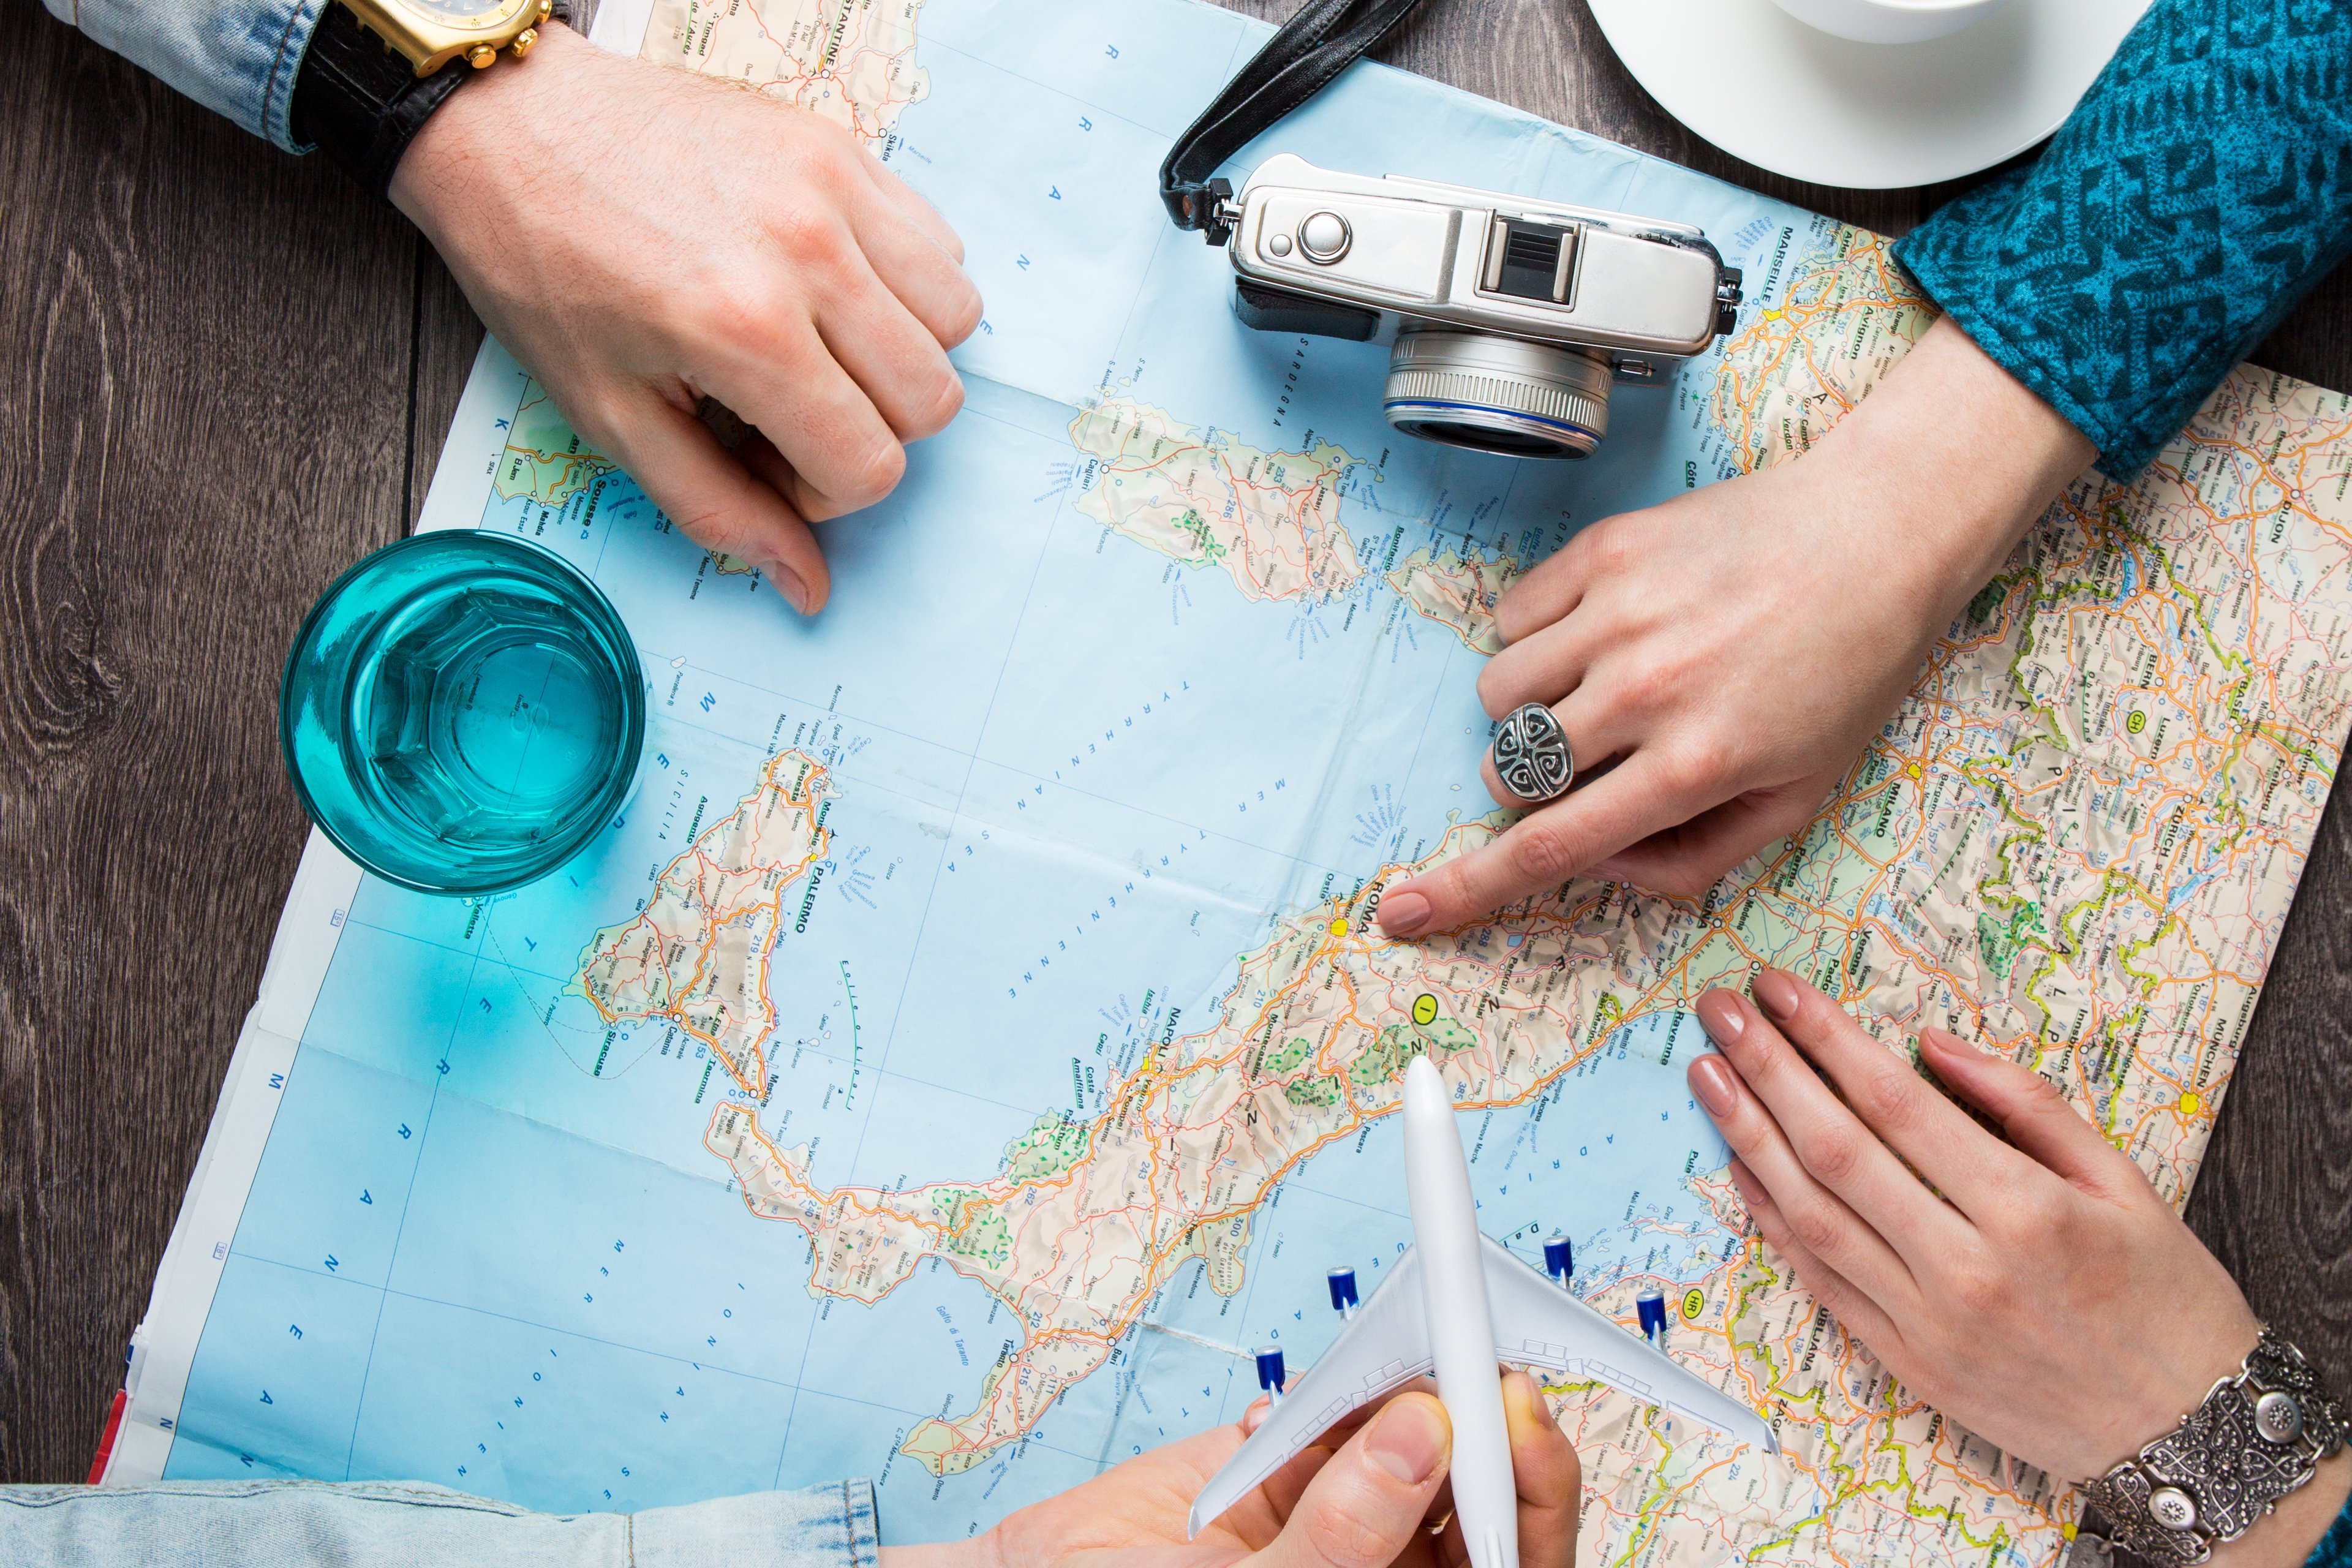 Landkarte mit zwei Personen die auf die Karte schauen und eine Reise planen, daneben stehen ein Kaffee, ein Fotoapparat und ein Glas Wasser